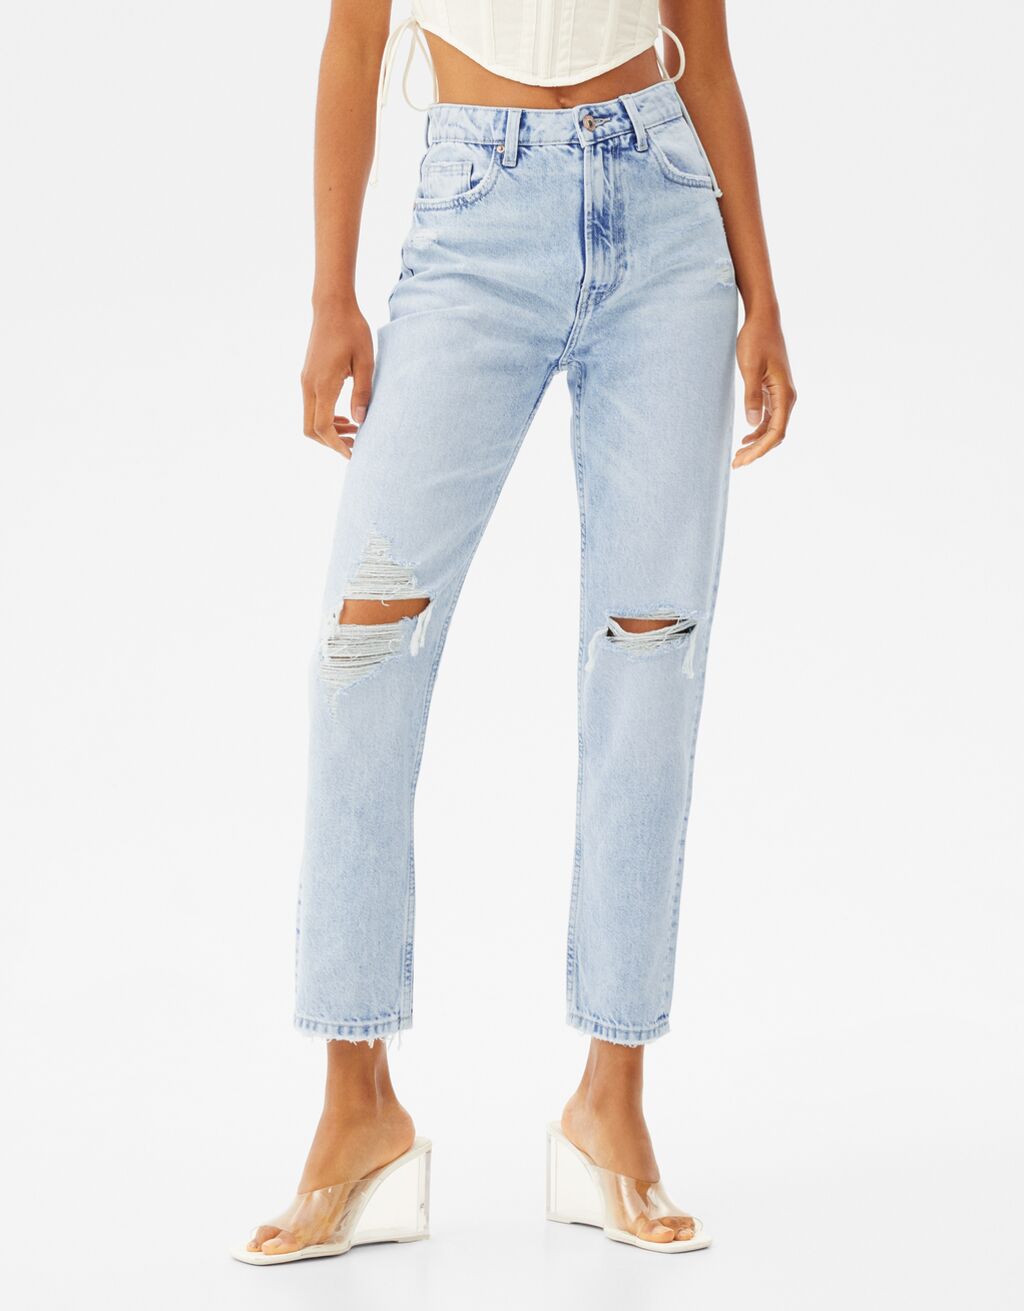 ג'ינס mom fit עם קרעים